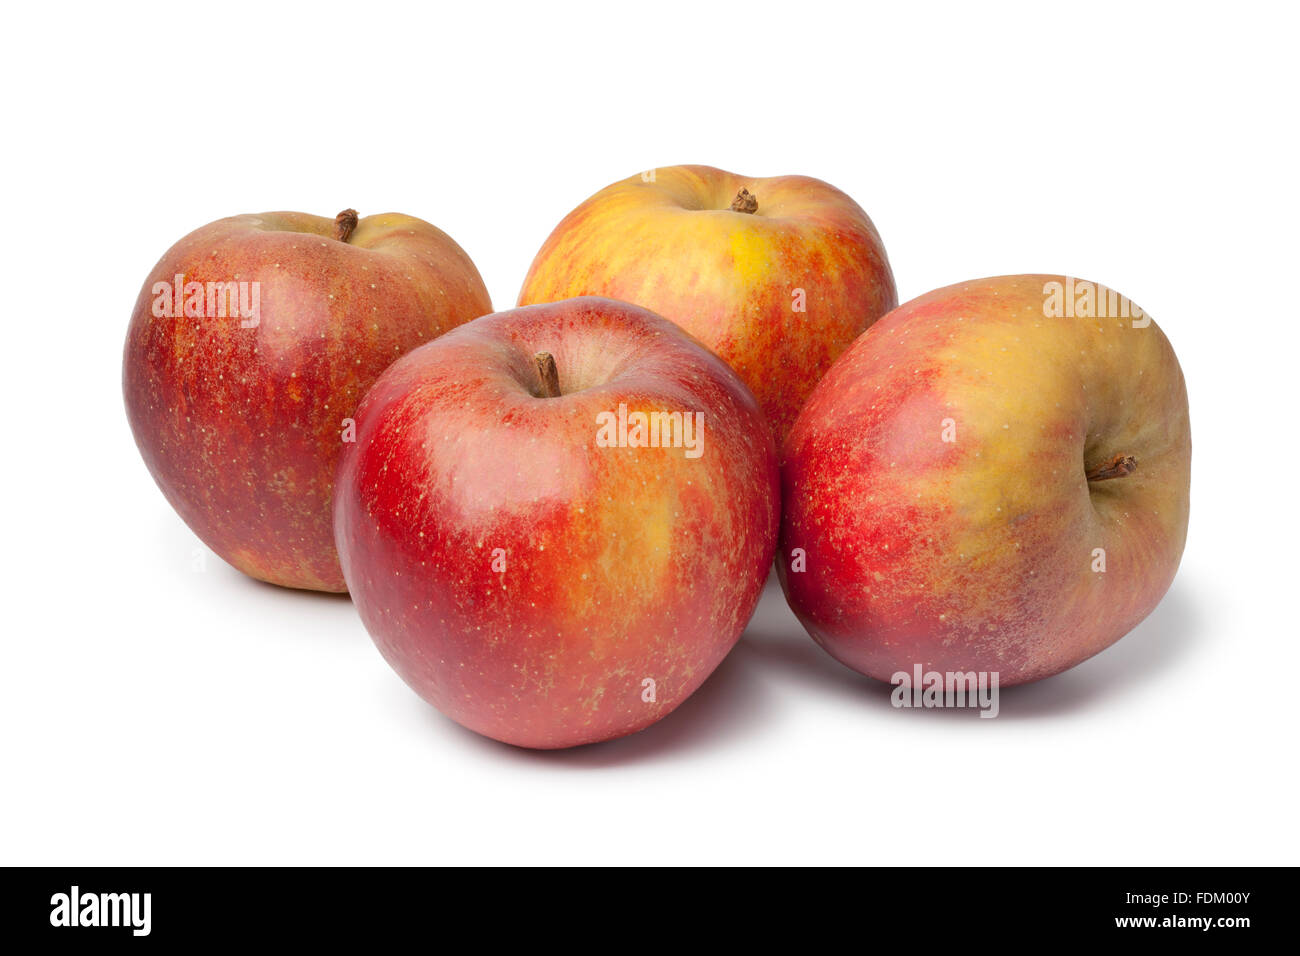 Fresh Belle de Boskoop apples on white background Stock Photo